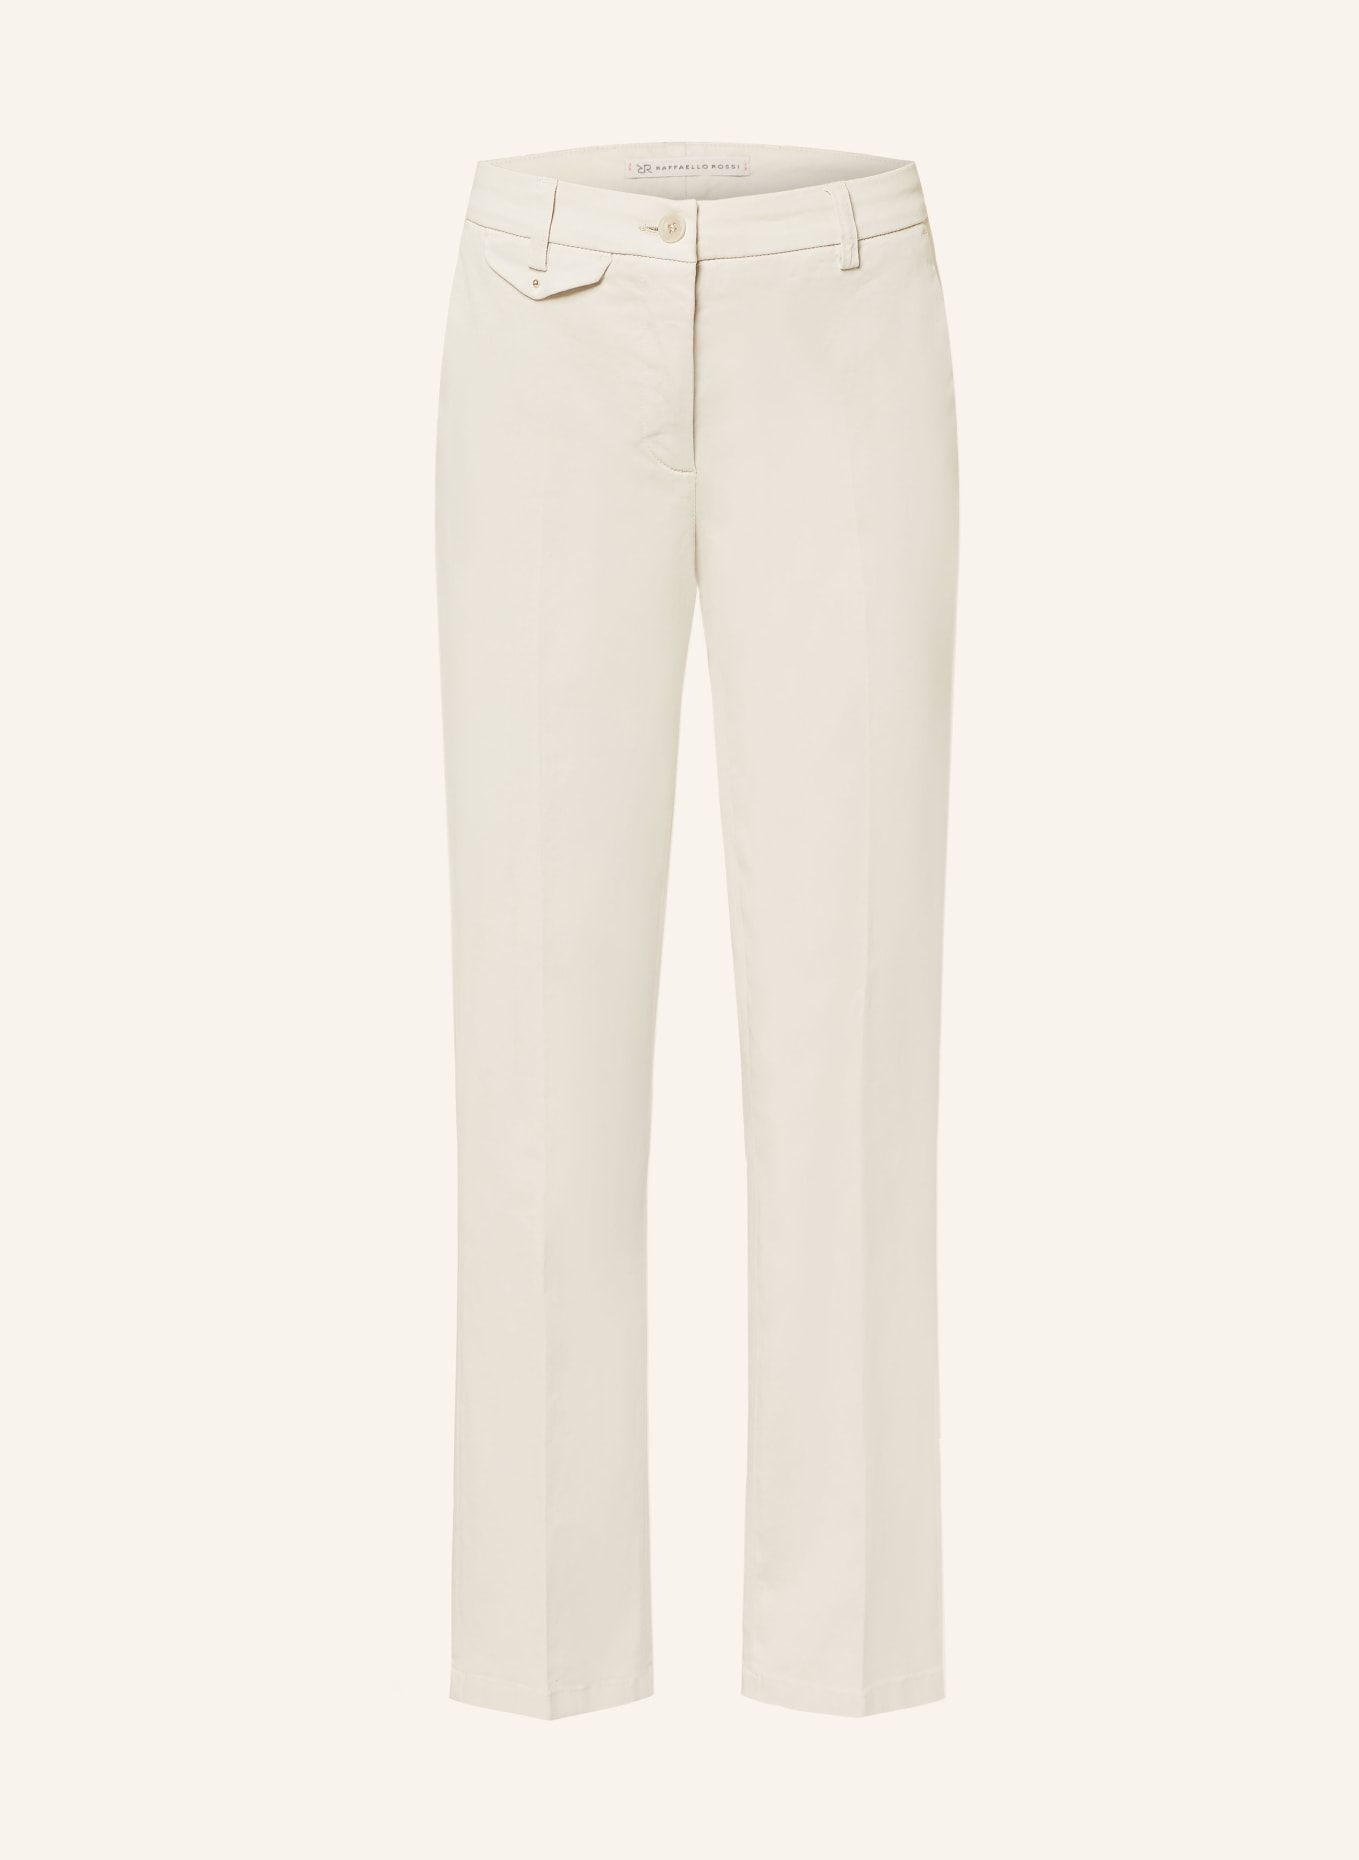 RAFFAELLO ROSSI 7/8 trousers DORAIN, Color: CREAM (Image 1)